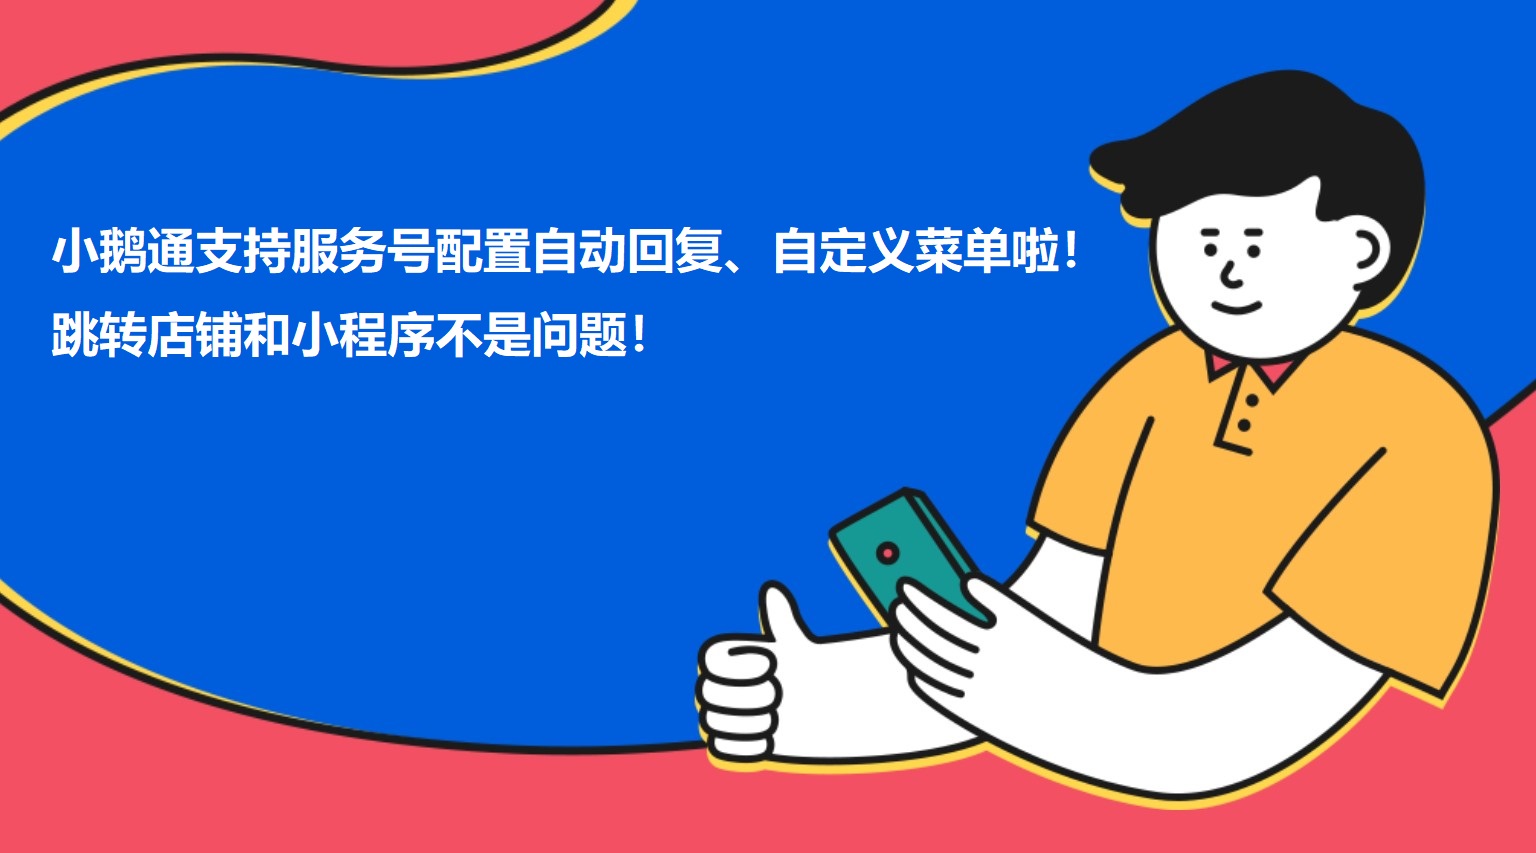 陕西小鹅通支持服务号配置自动回复、自定义菜单啦！跳转店铺和小程序不是问题！